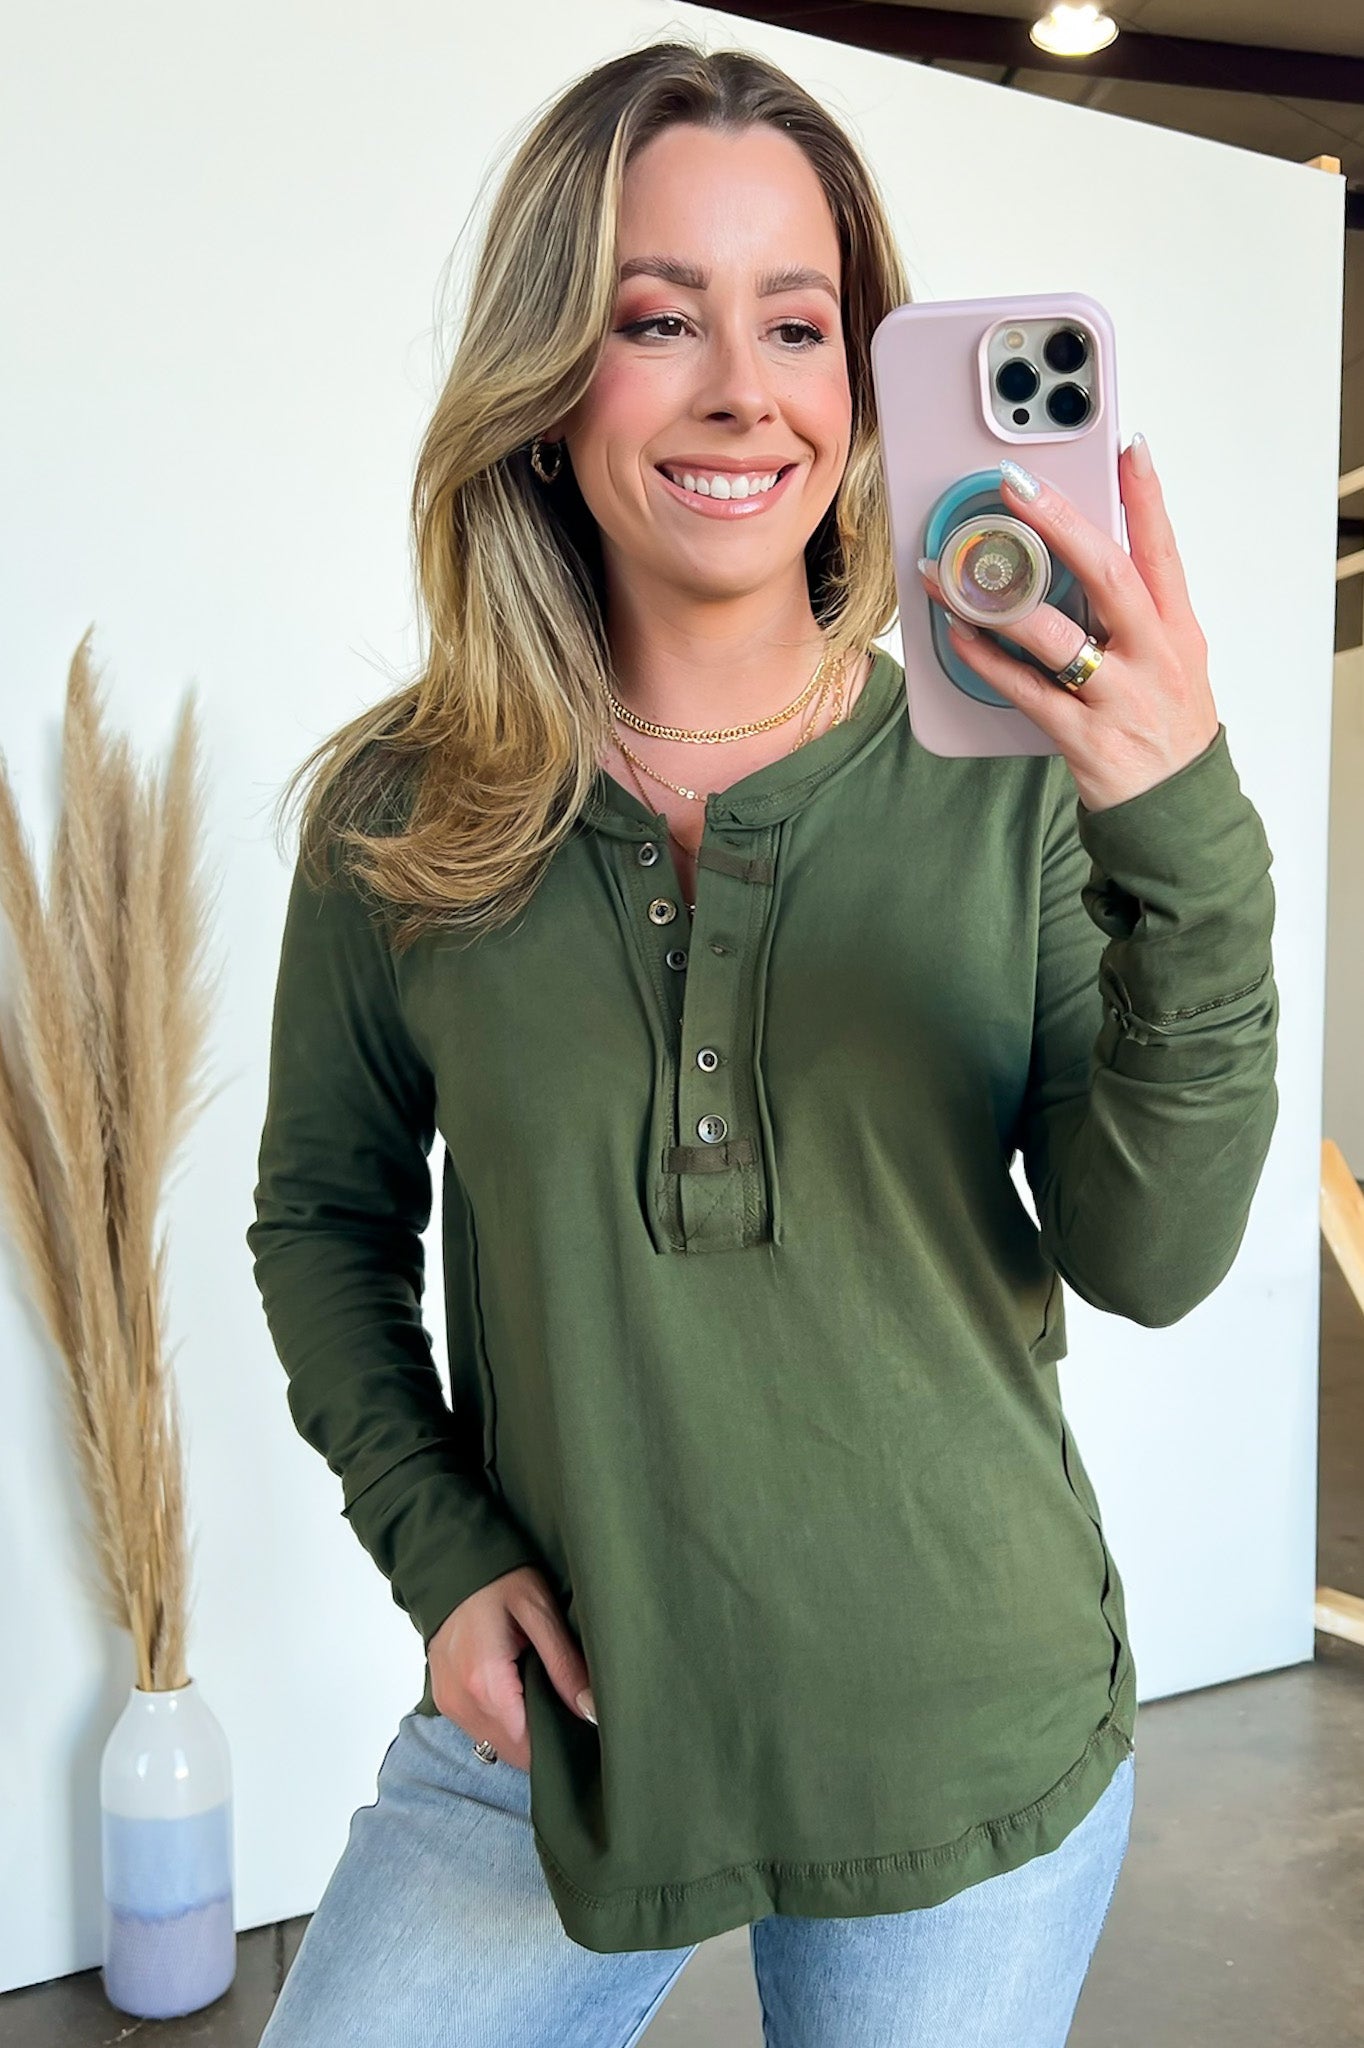 Sierra Henley Shirt - Green